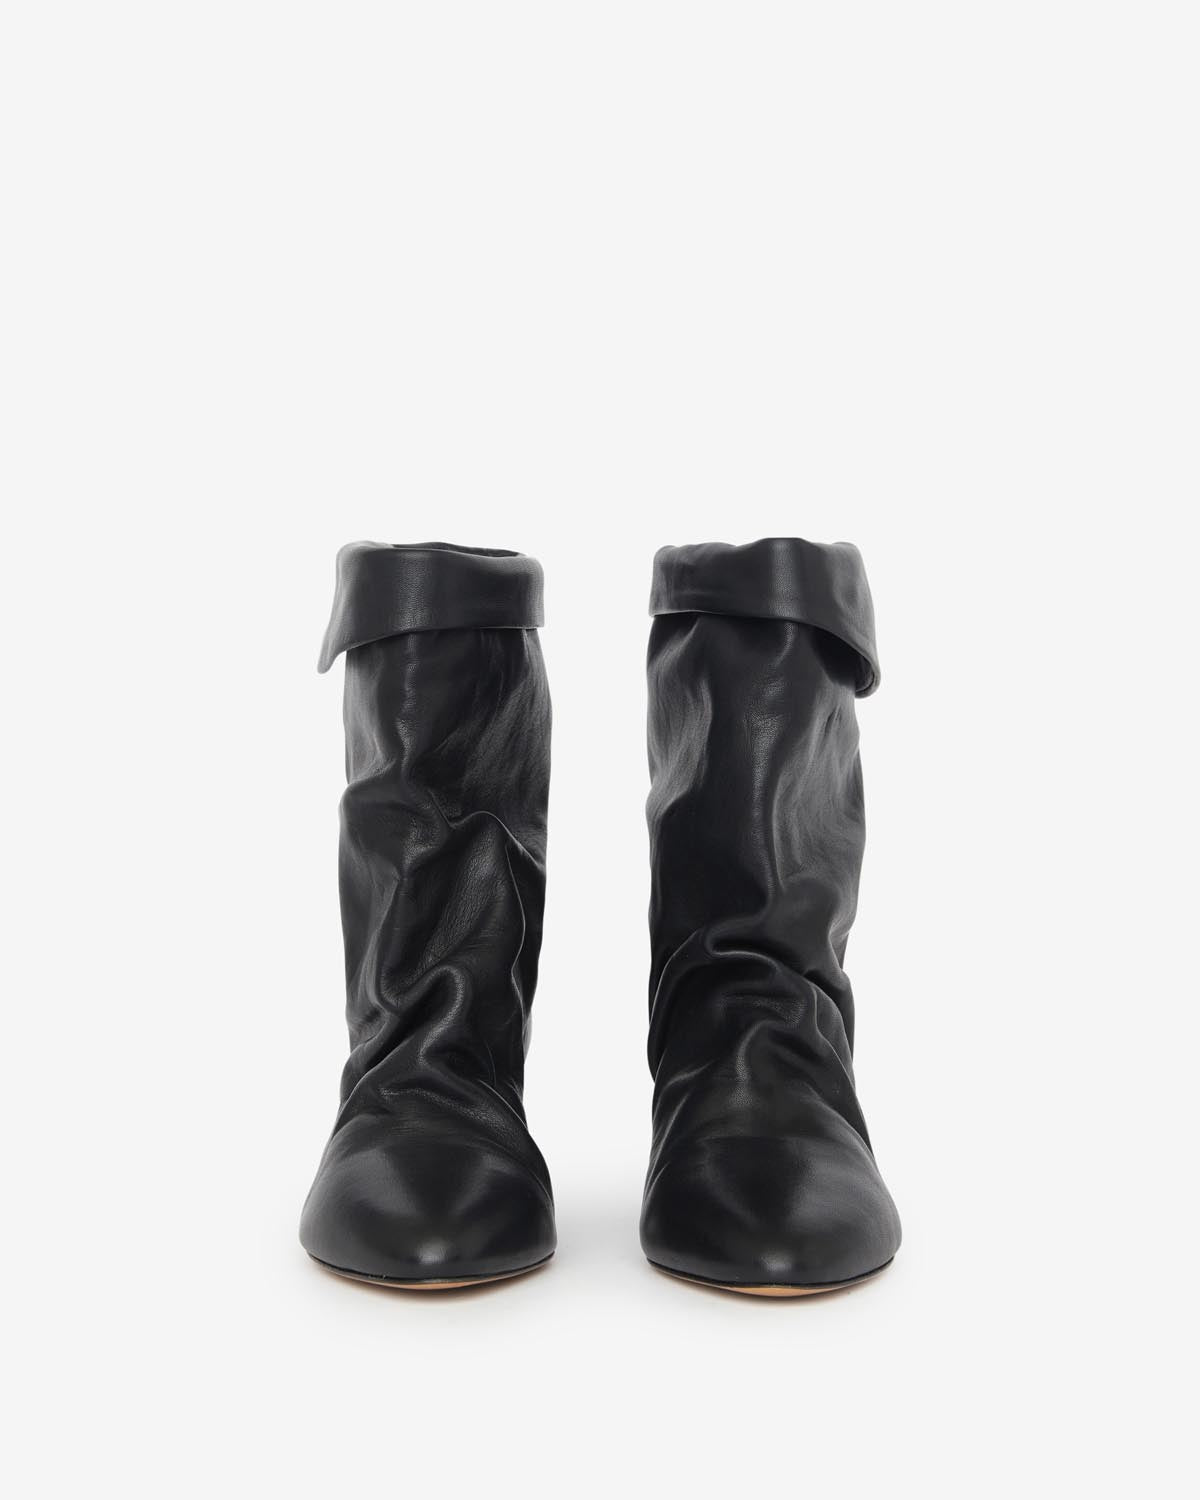 Boots ryska Woman Noir 1